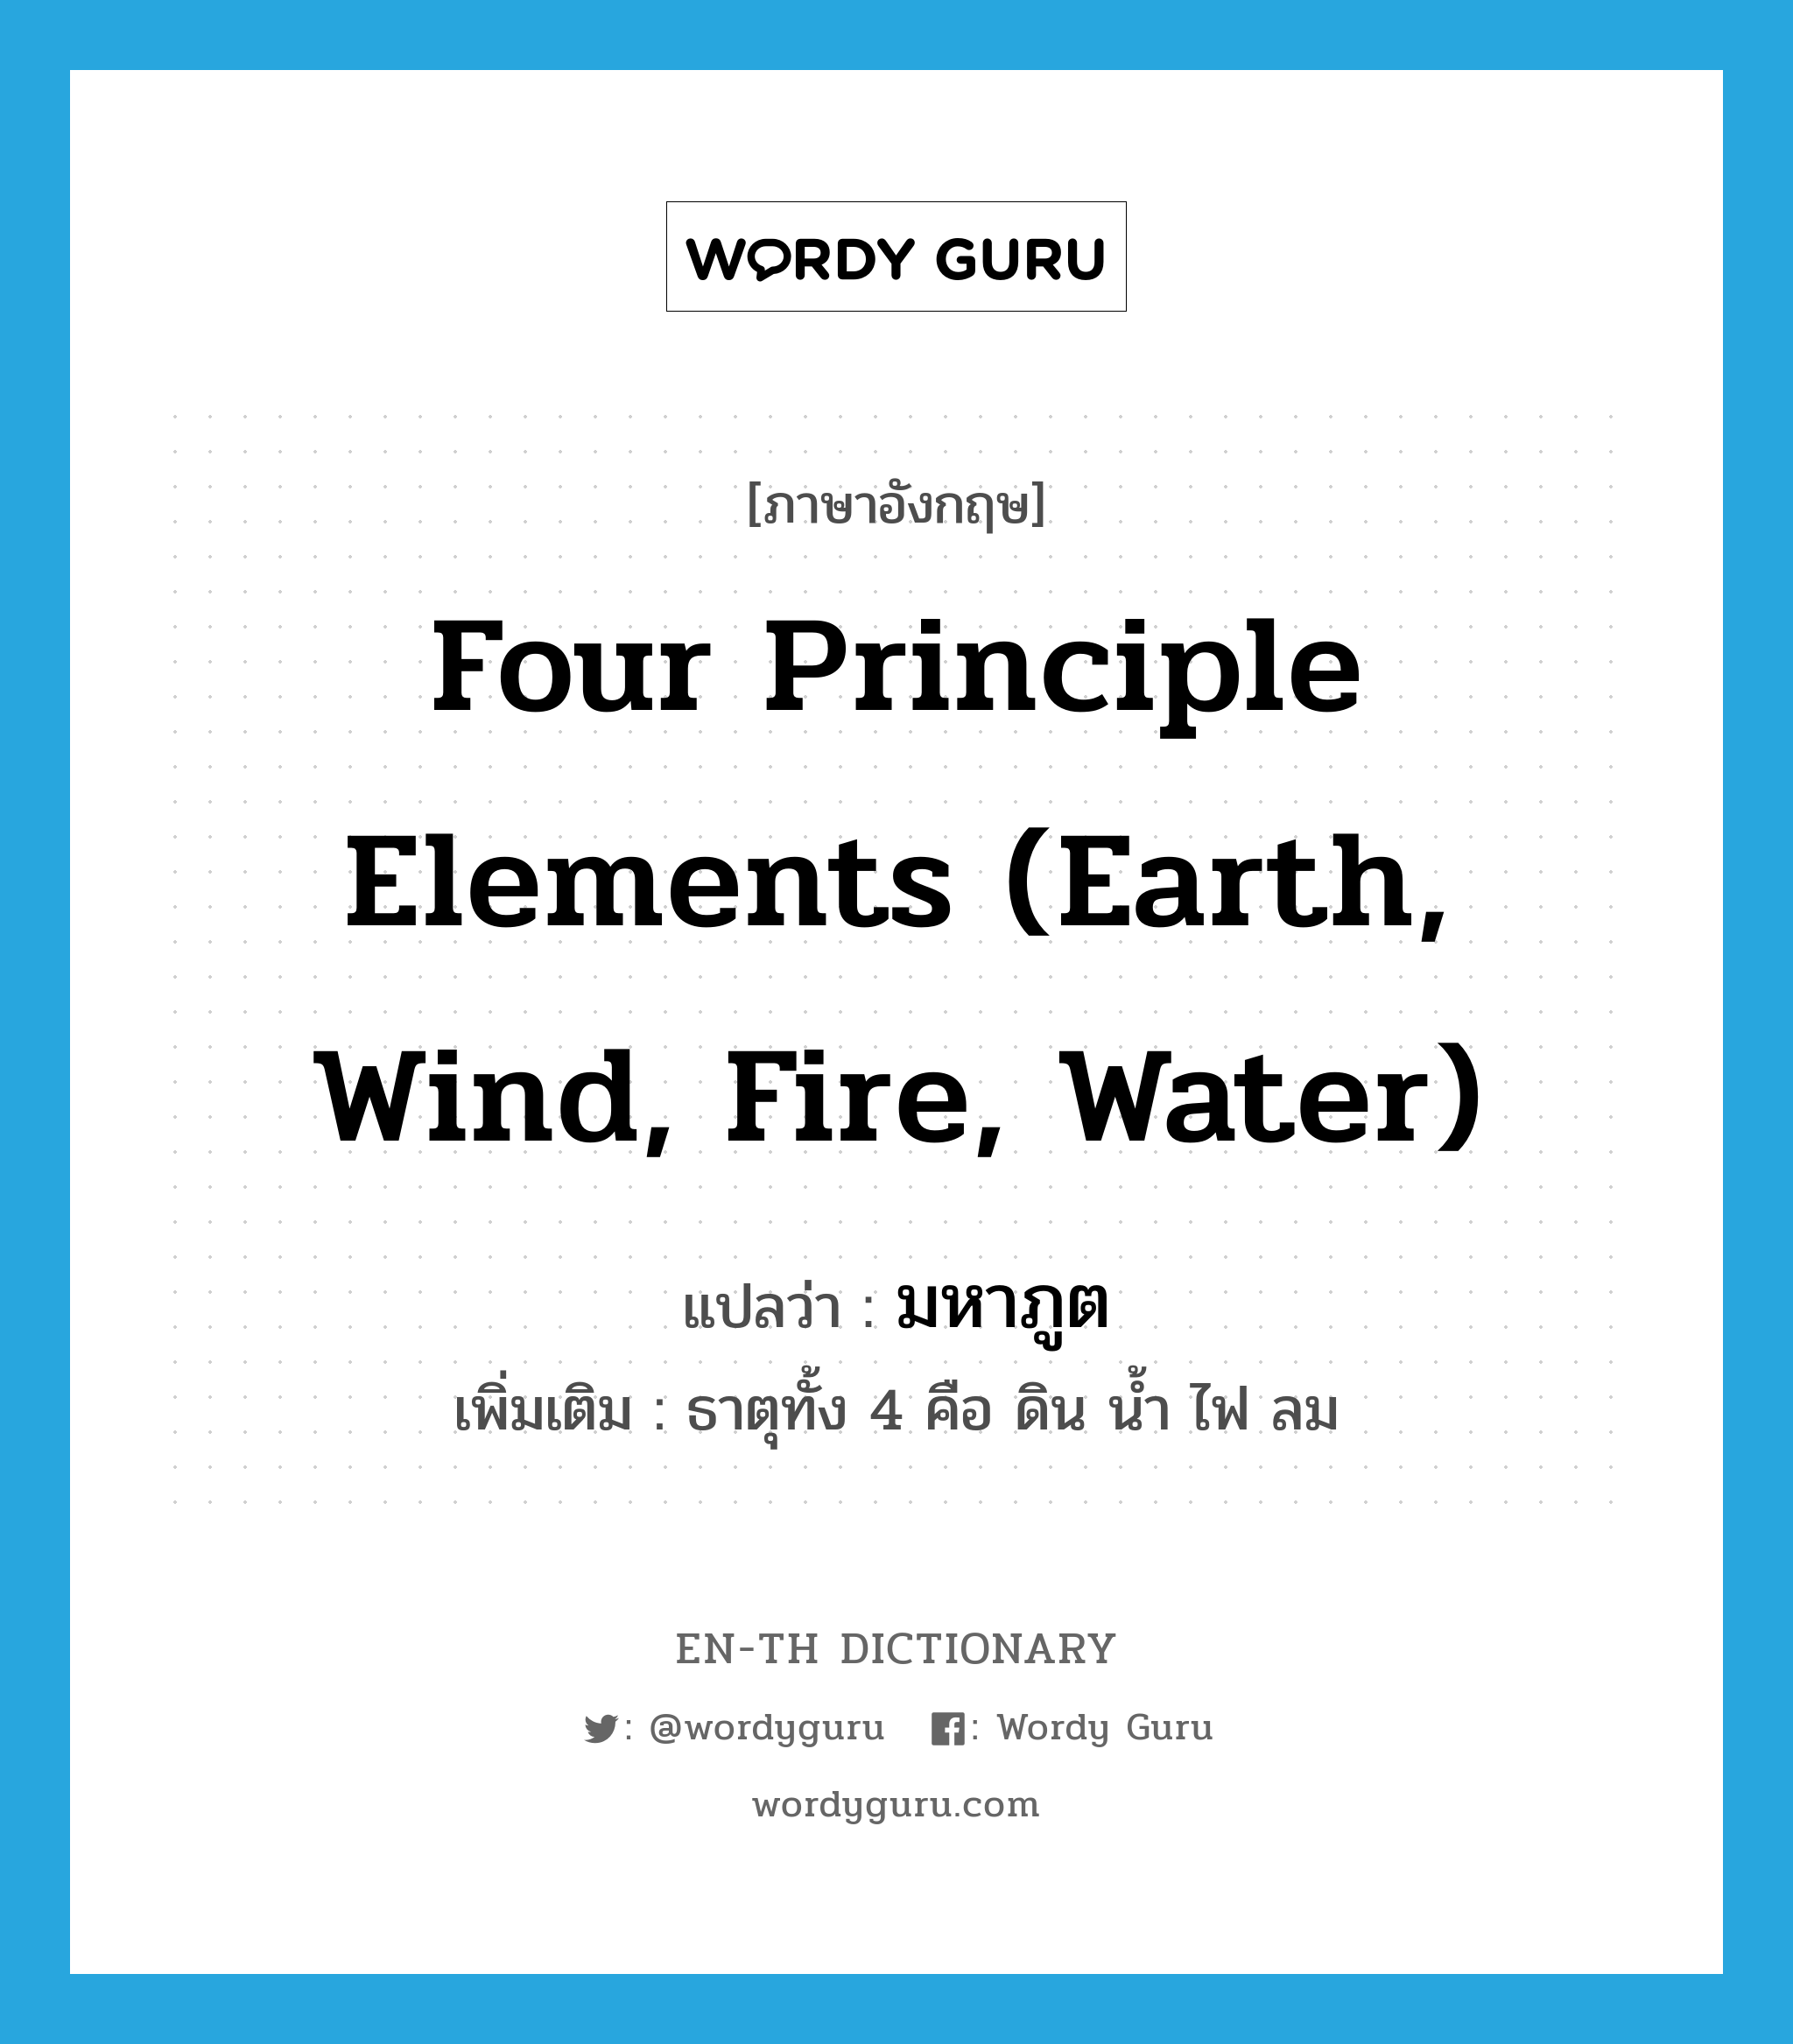 มหาภูต ภาษาอังกฤษ?, คำศัพท์ภาษาอังกฤษ มหาภูต แปลว่า four principle elements (earth, wind, fire, water) ประเภท N เพิ่มเติม ธาตุทั้ง 4 คือ ดิน น้ำ ไฟ ลม หมวด N